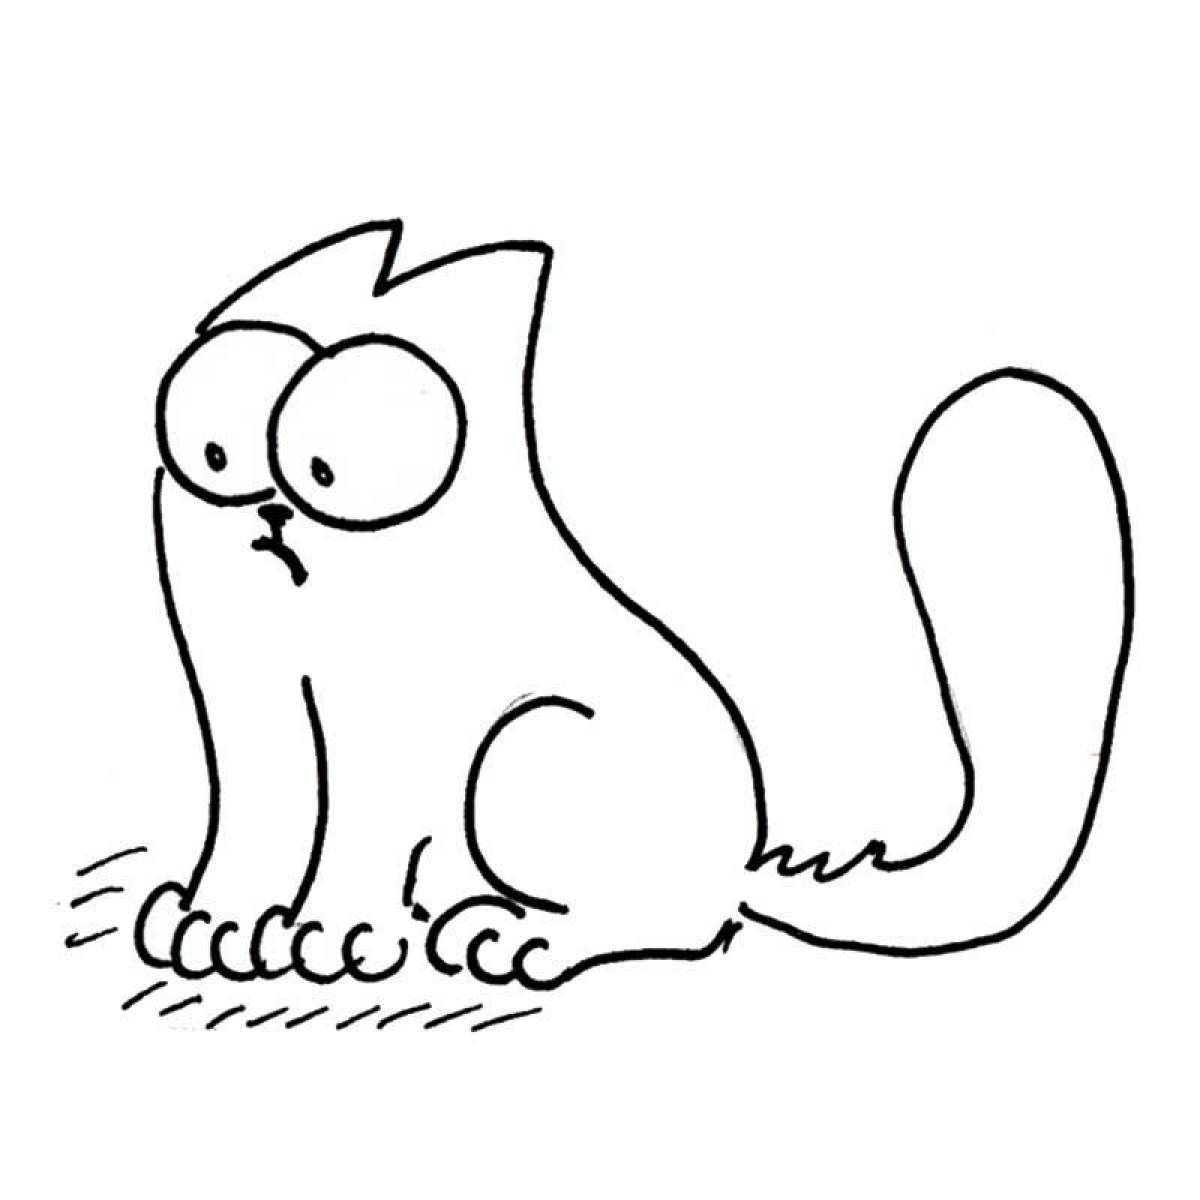 Joyful coloring cartoon cat